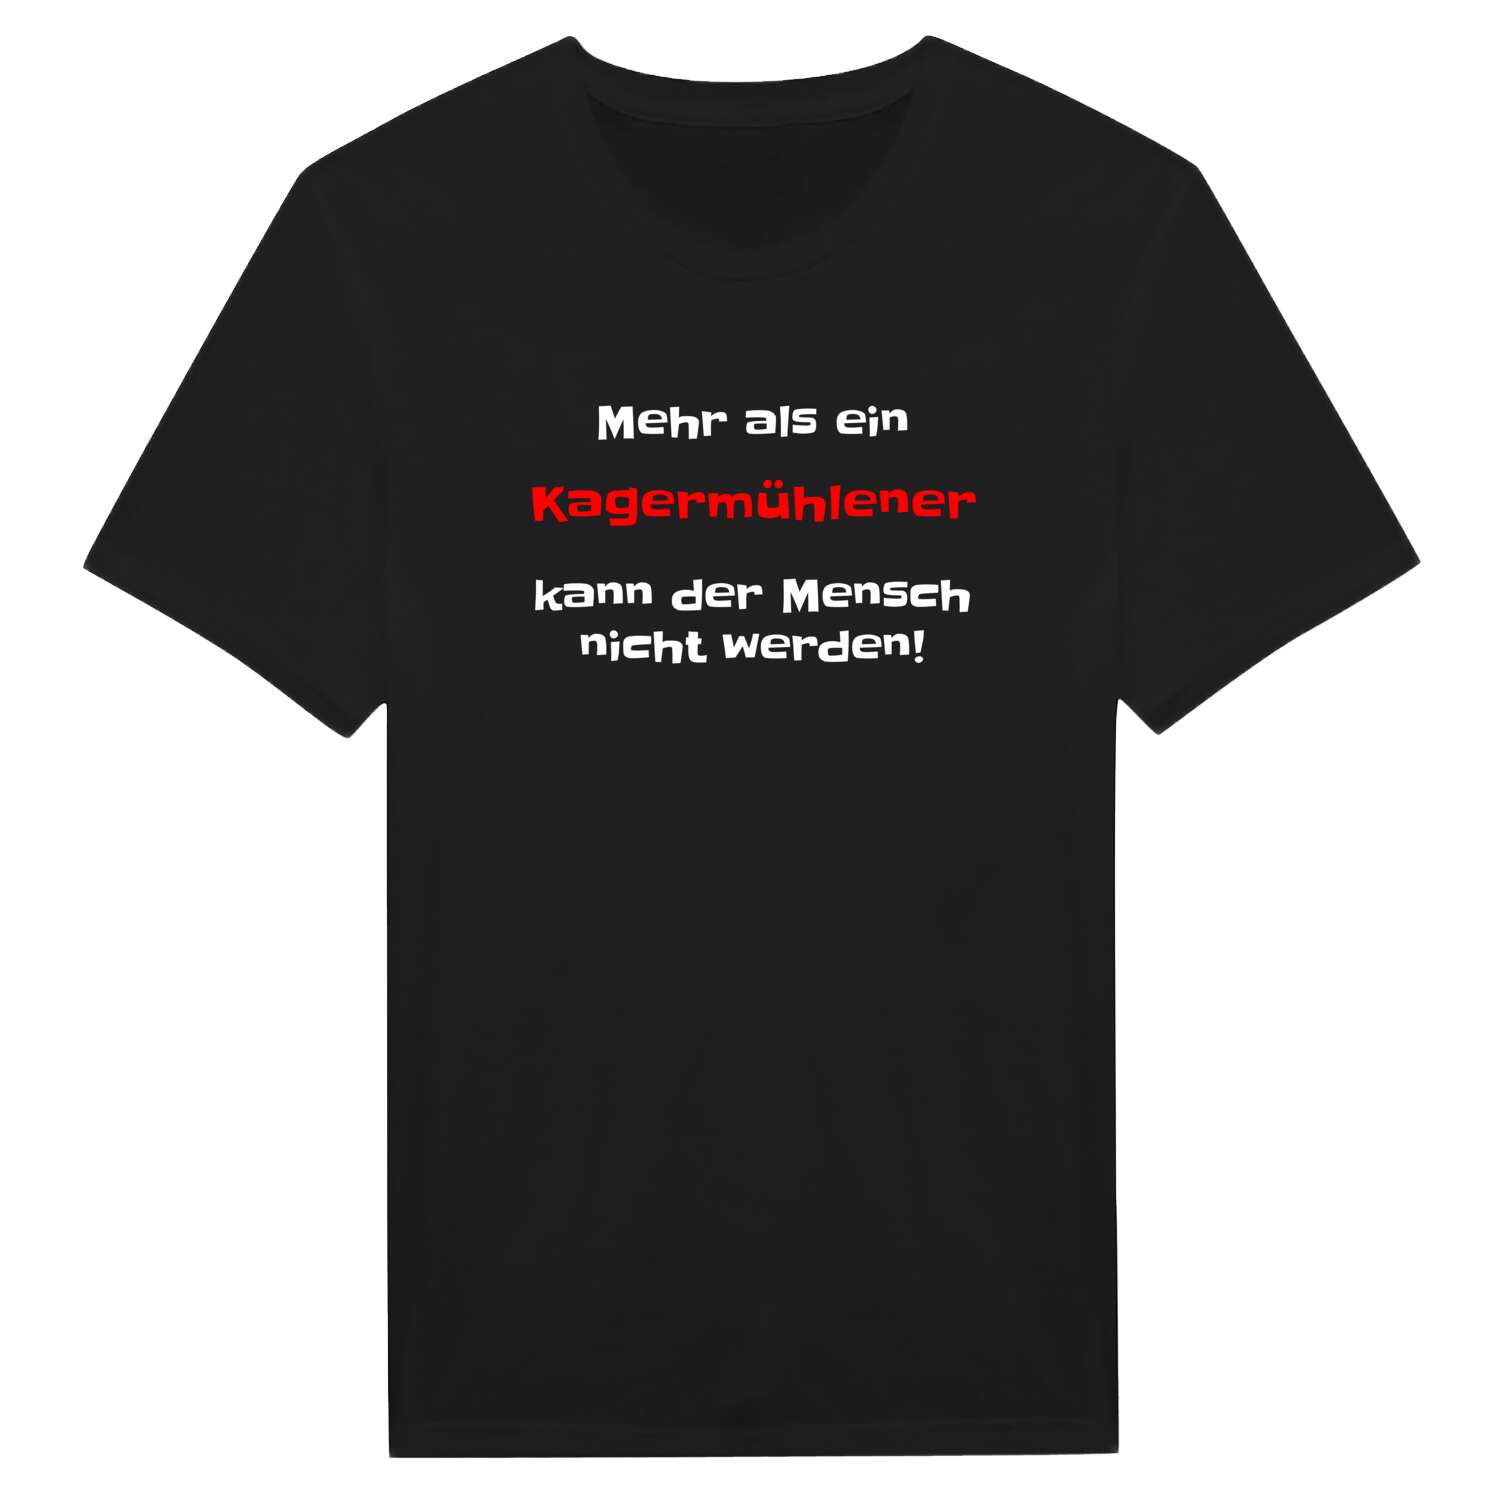 Kagermühle T-Shirt »Mehr als ein«